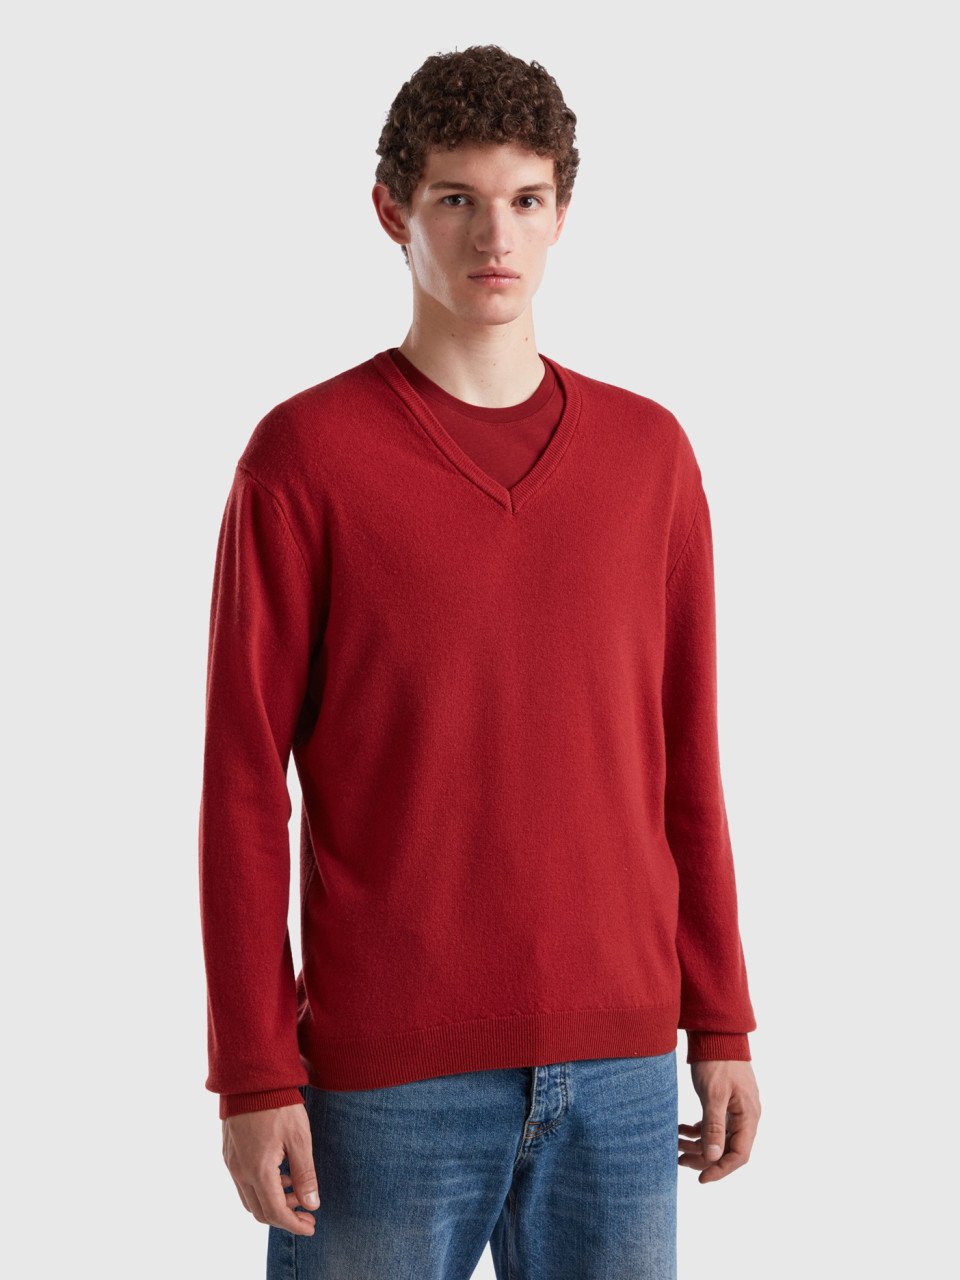 Benetton, Burgundy V-neck Sweater In Pure Merino Wool, Burgundy, Men